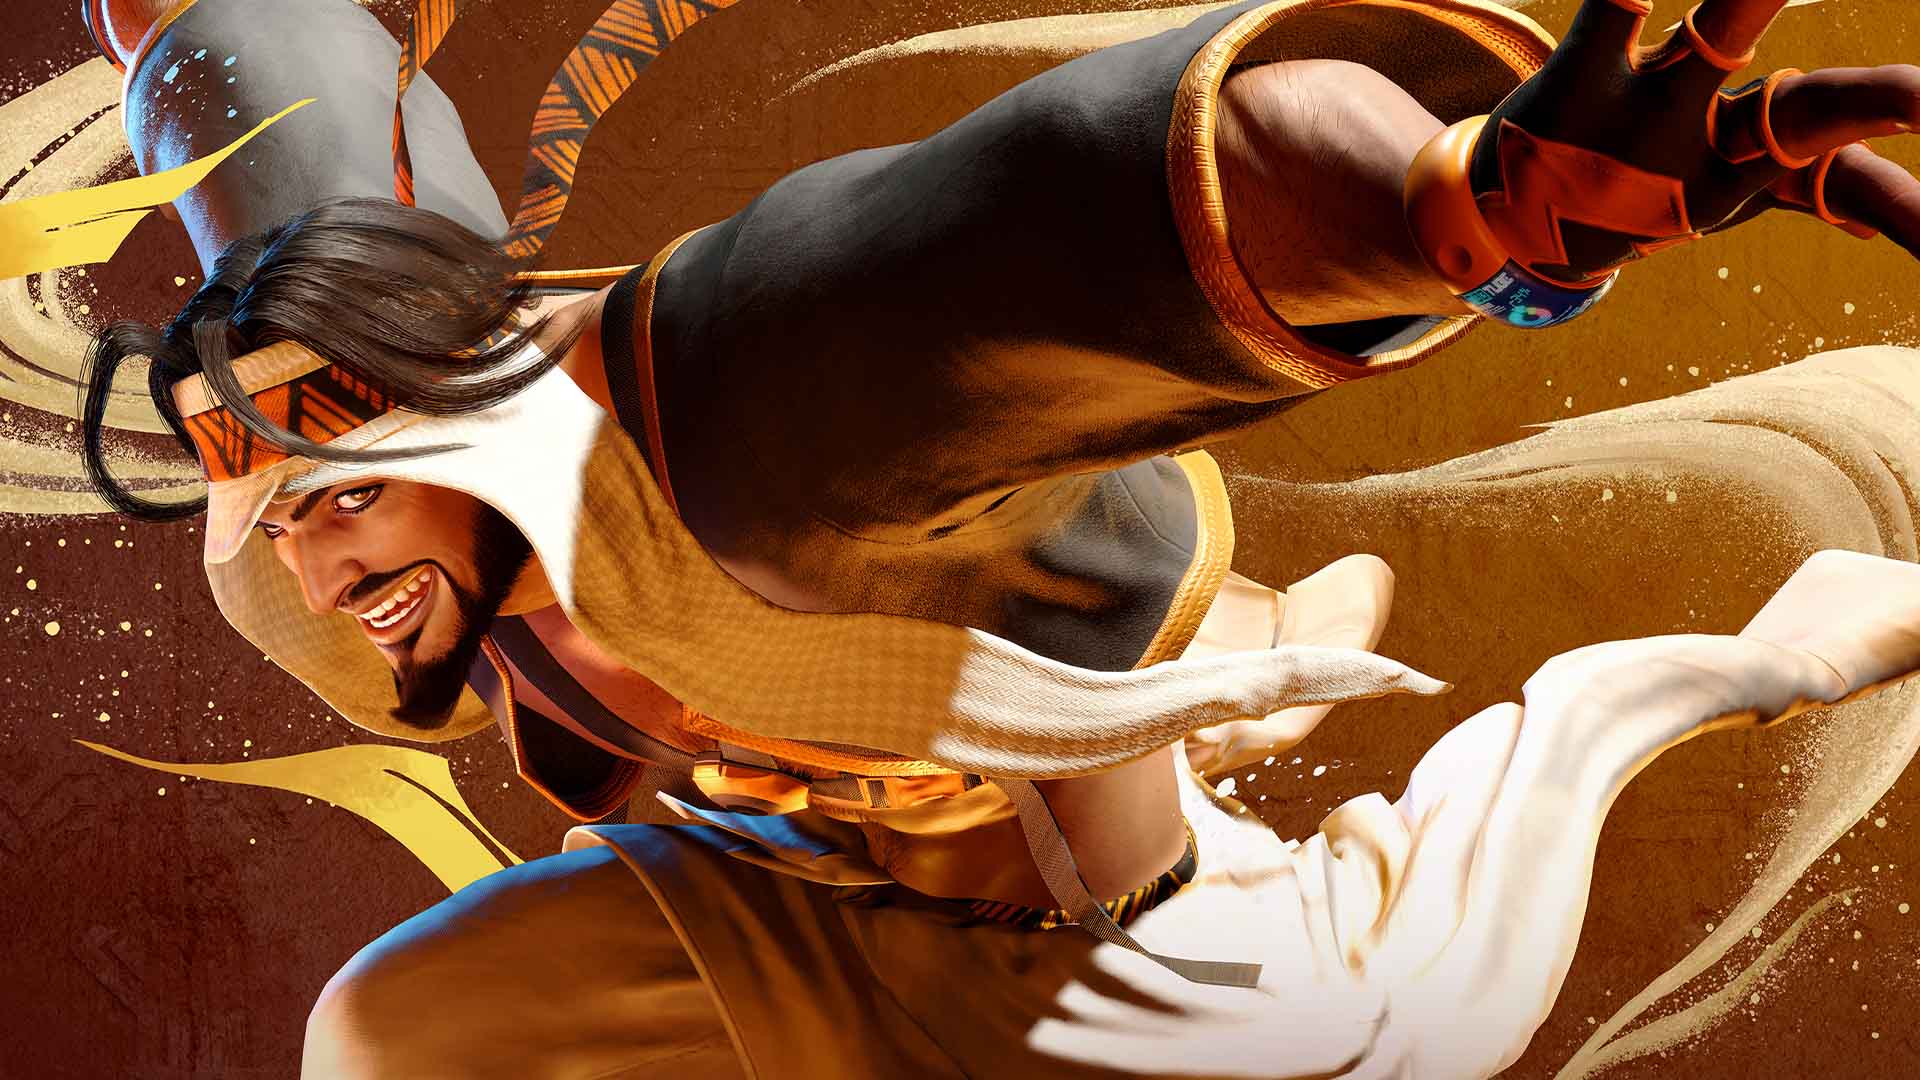 Capcom ha publicado un tráiler del primer DLC para Street Fighter 6, que añade un nuevo personaje al juego: Rashid.